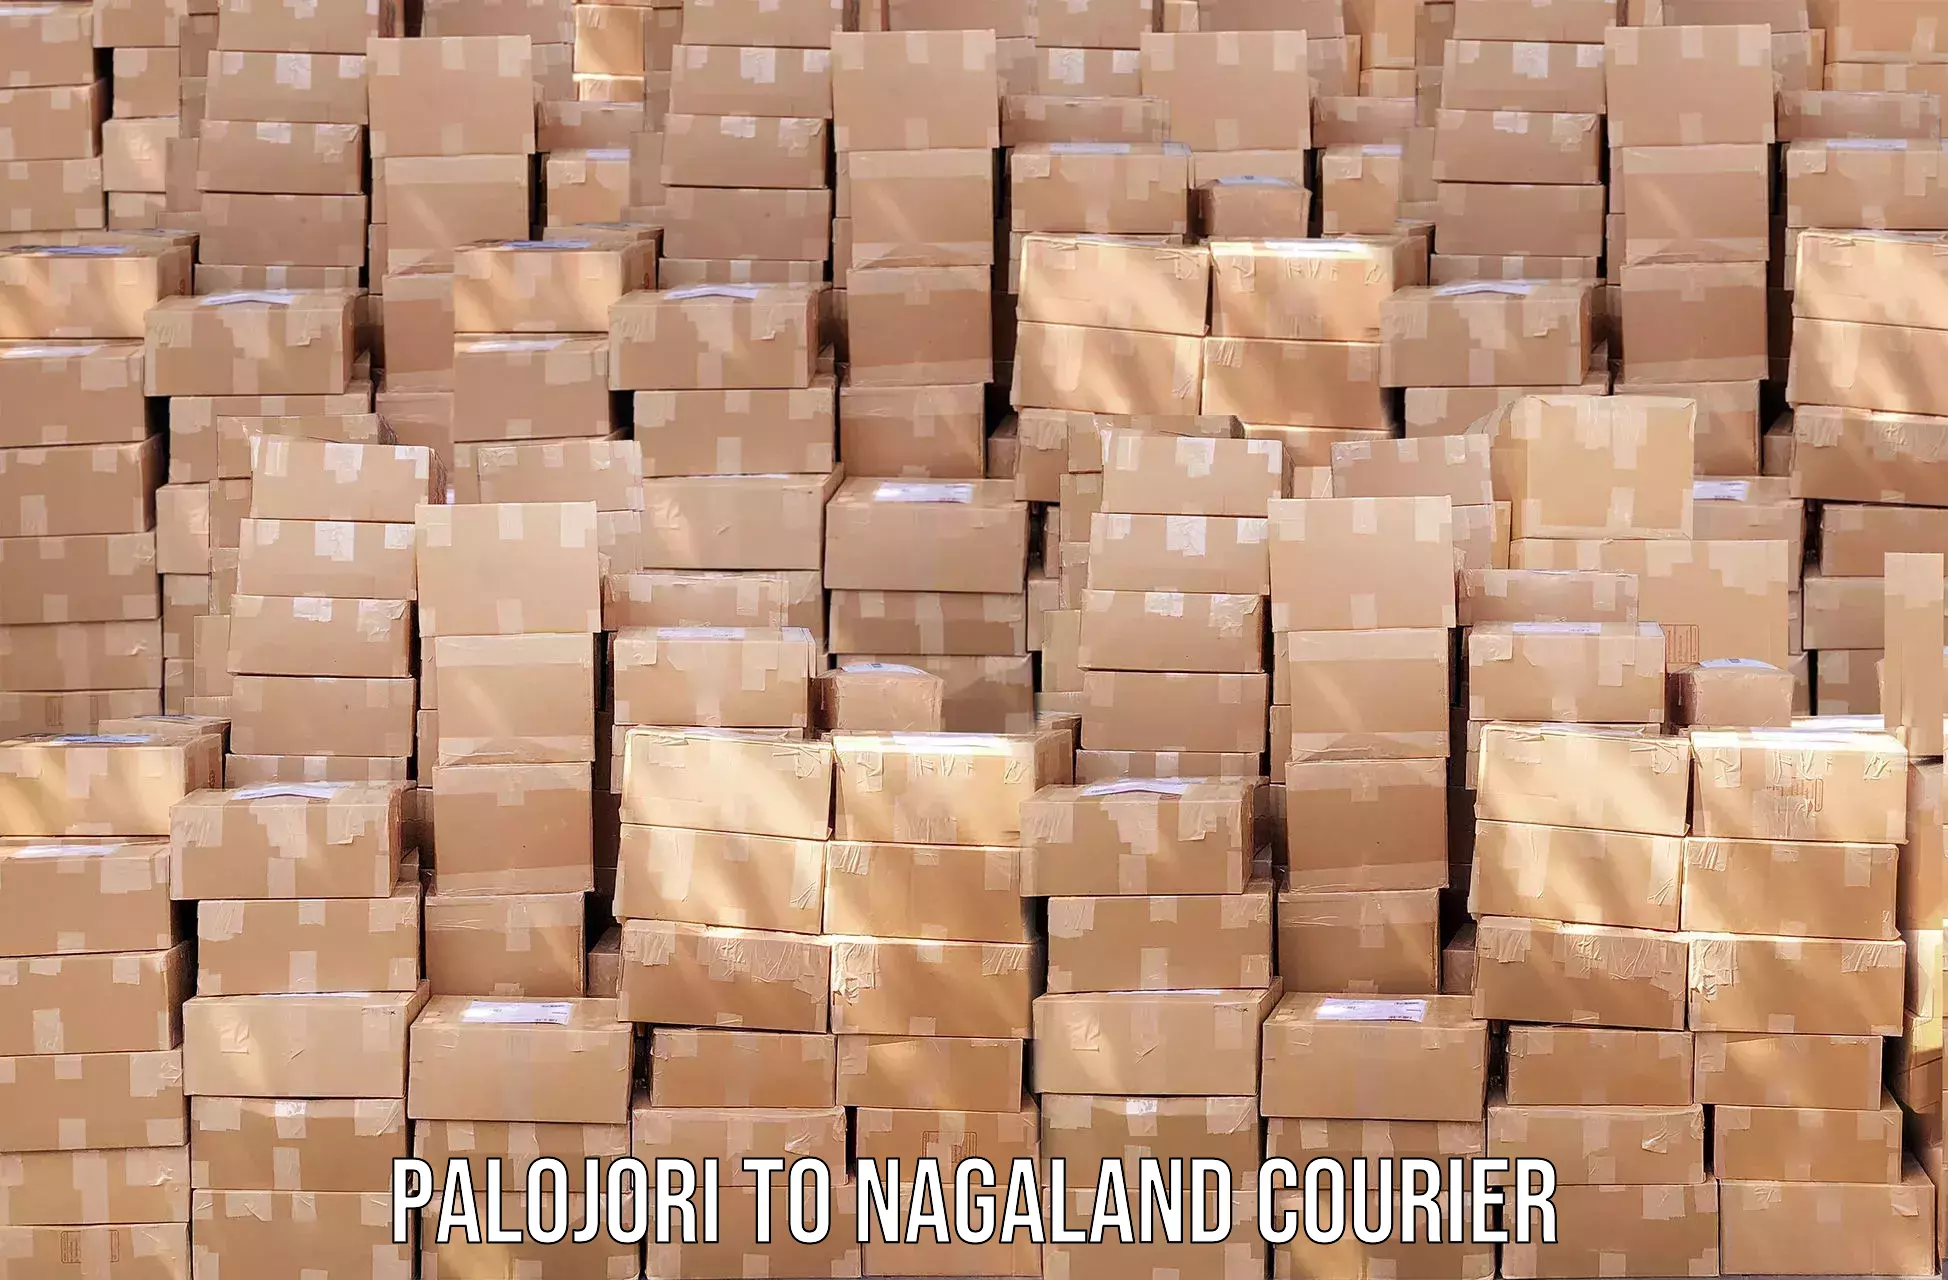 Express mail service Palojori to Nagaland